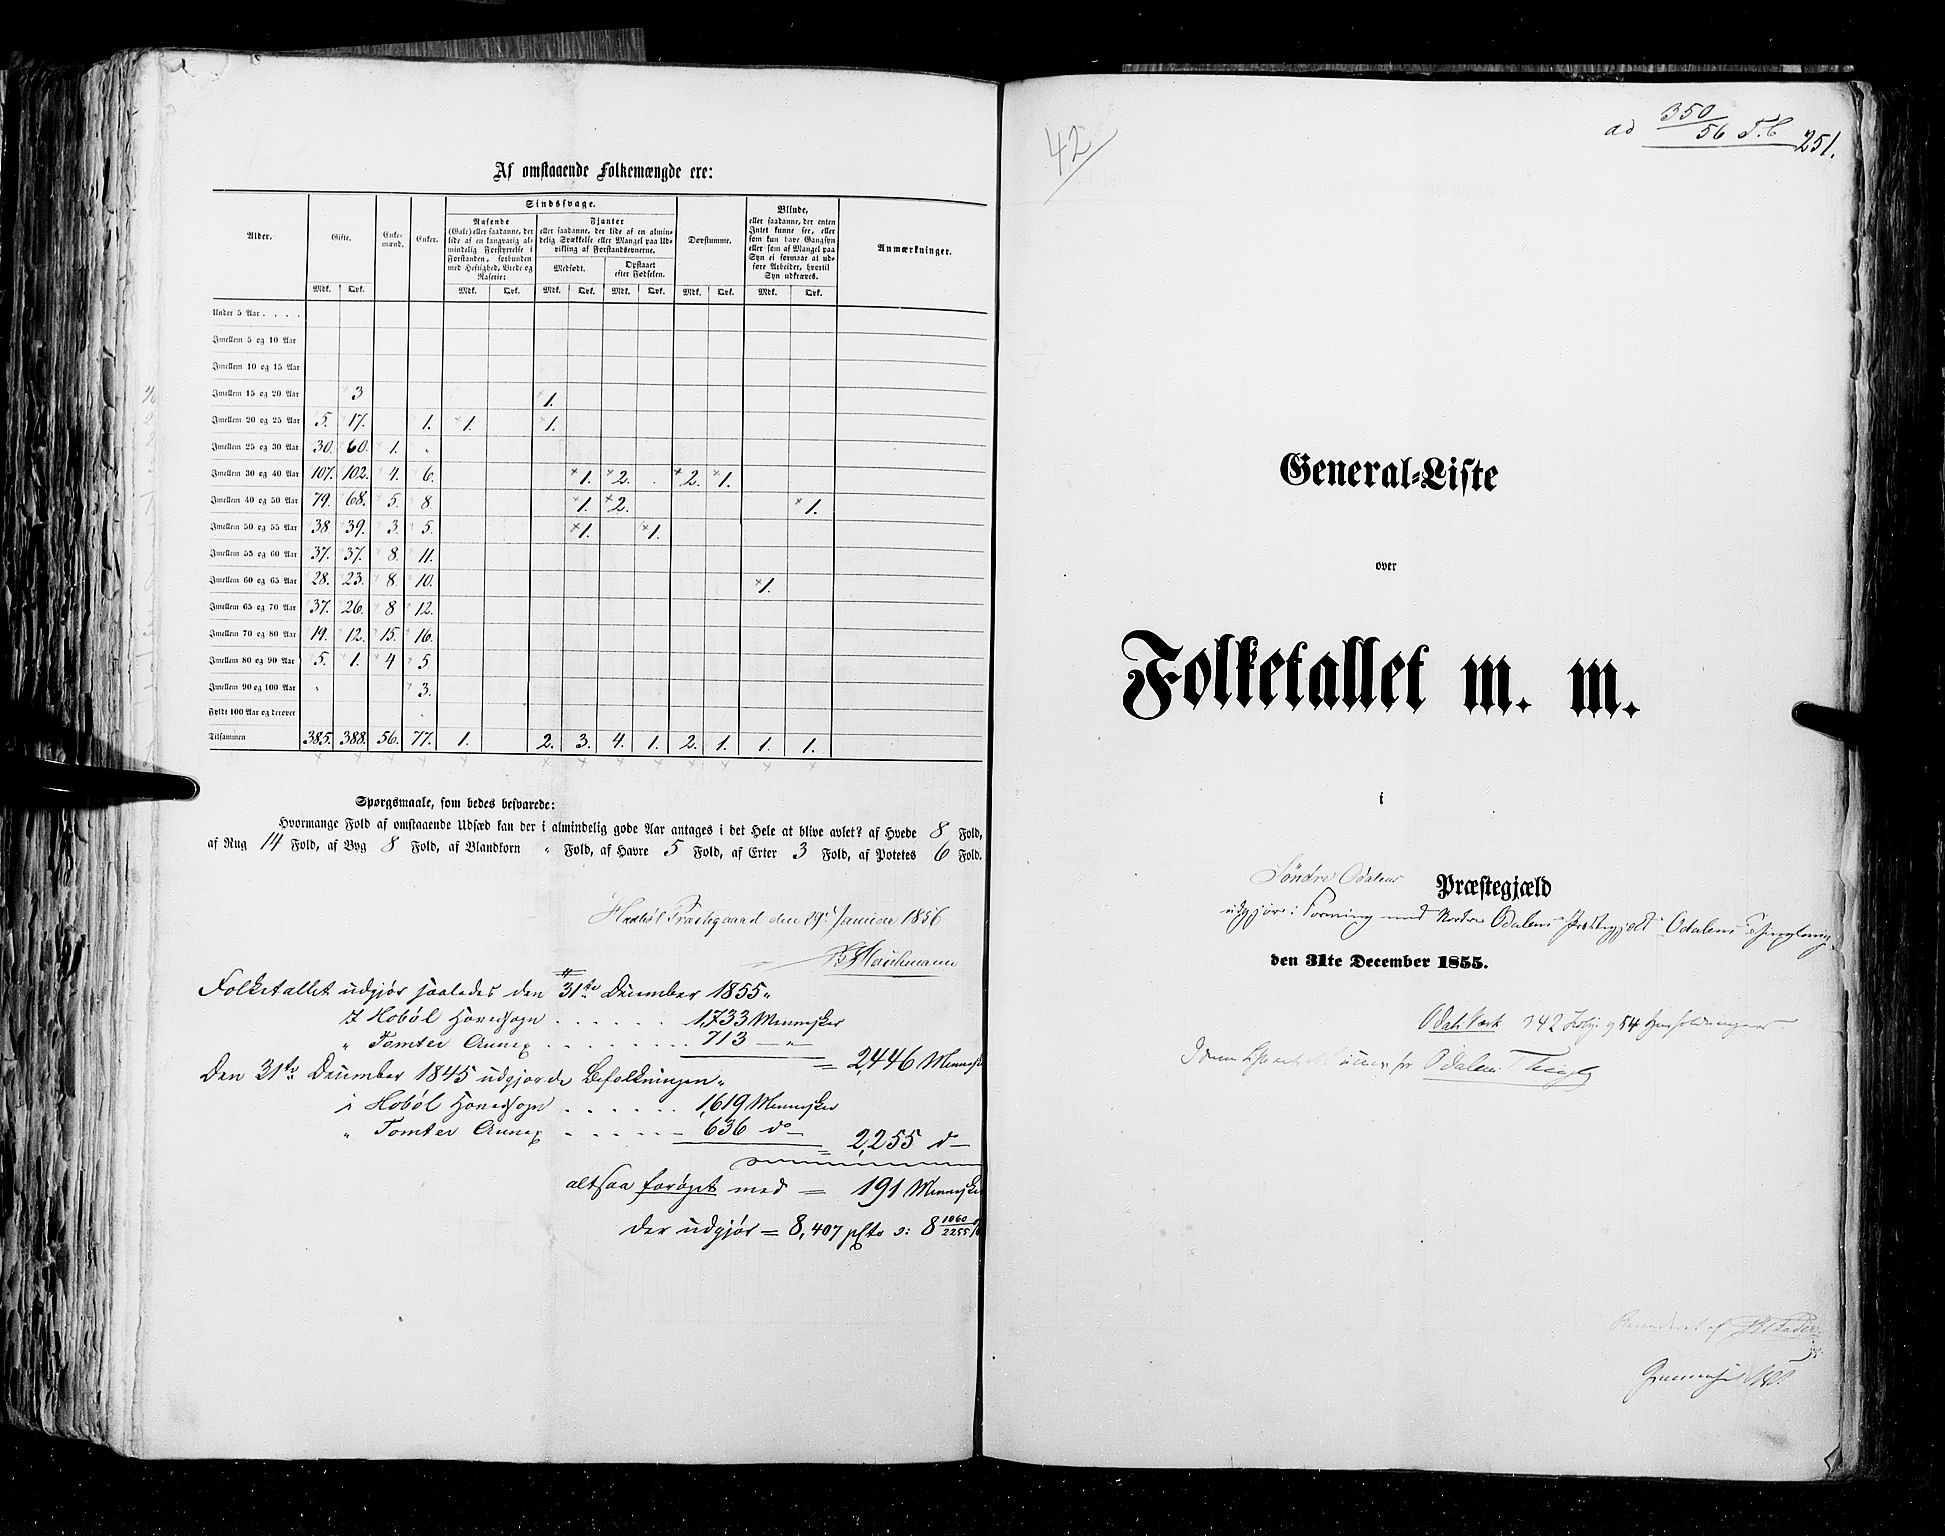 RA, Folketellingen 1855, bind 1: Akershus amt, Smålenenes amt og Hedemarken amt, 1855, s. 251